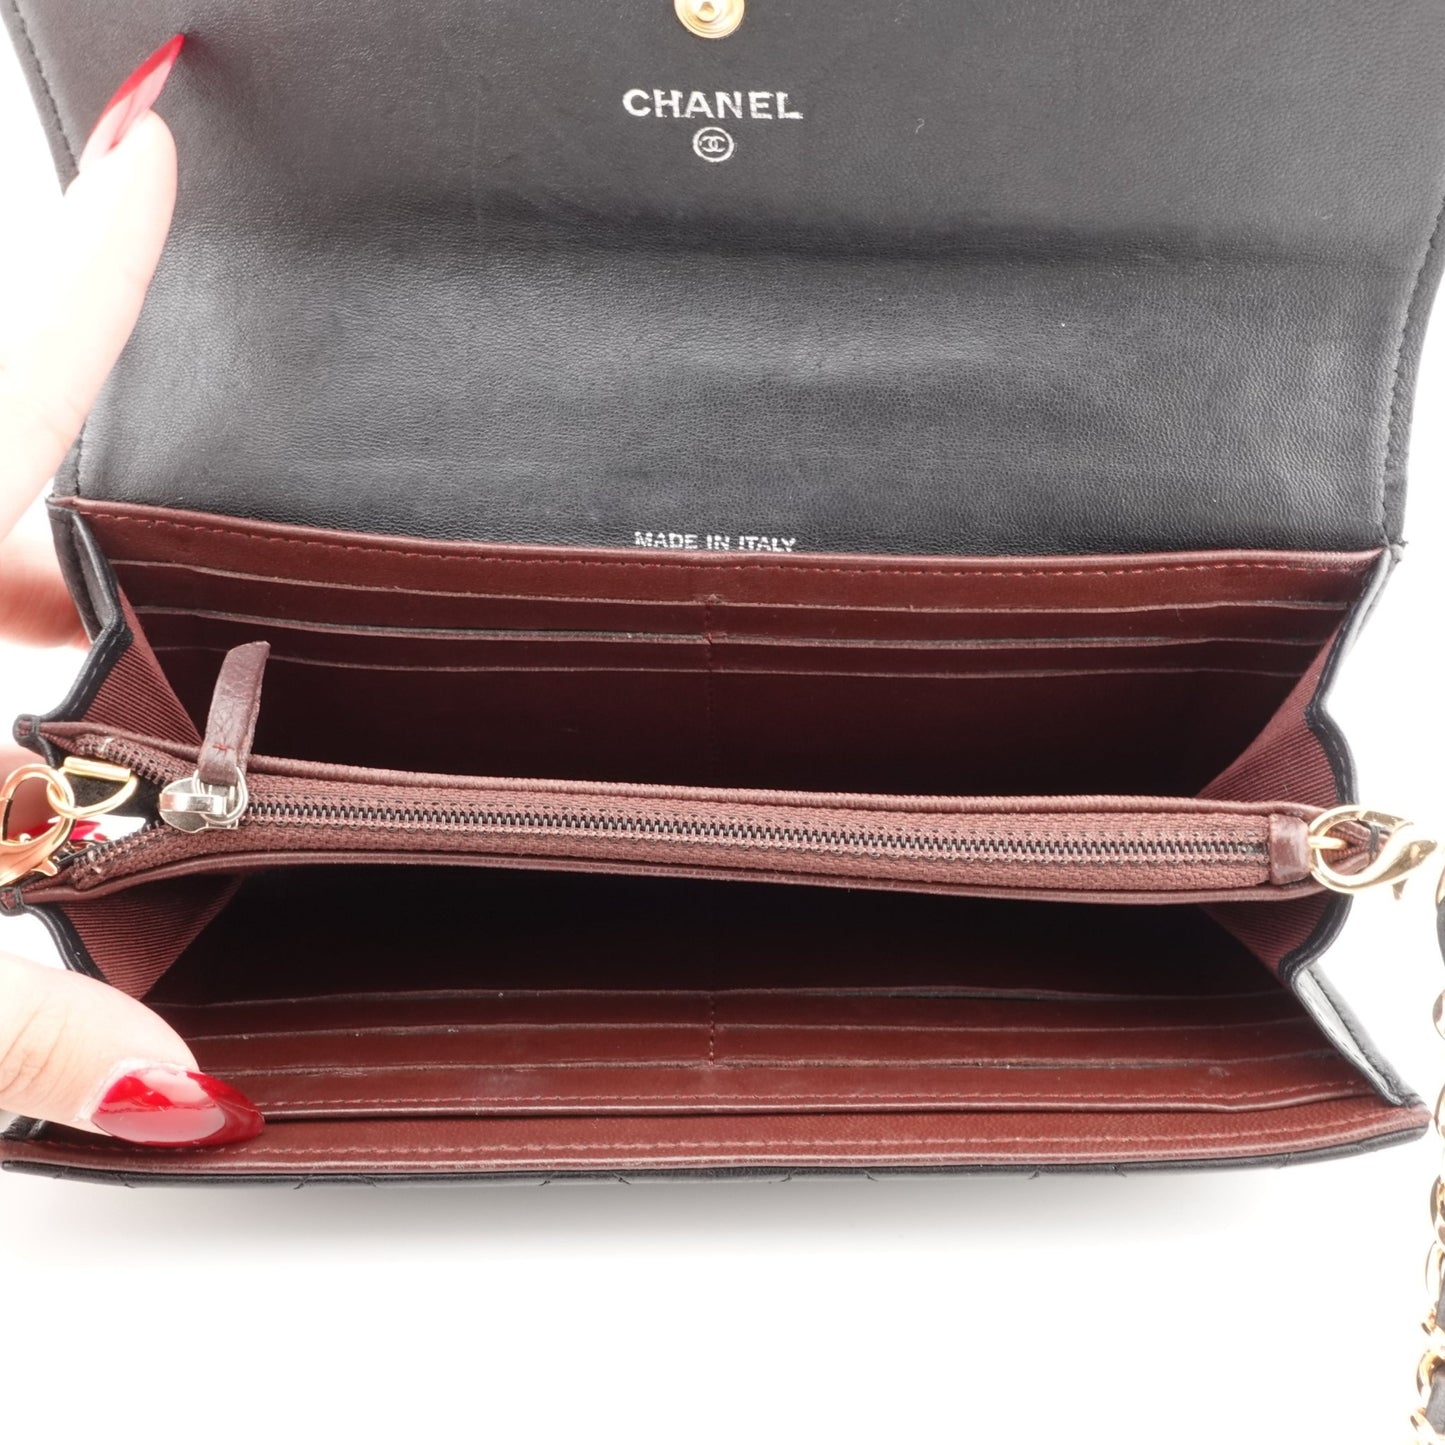 CHANEL Lambskin Long Flap Wallet on Chain - Bag Envy